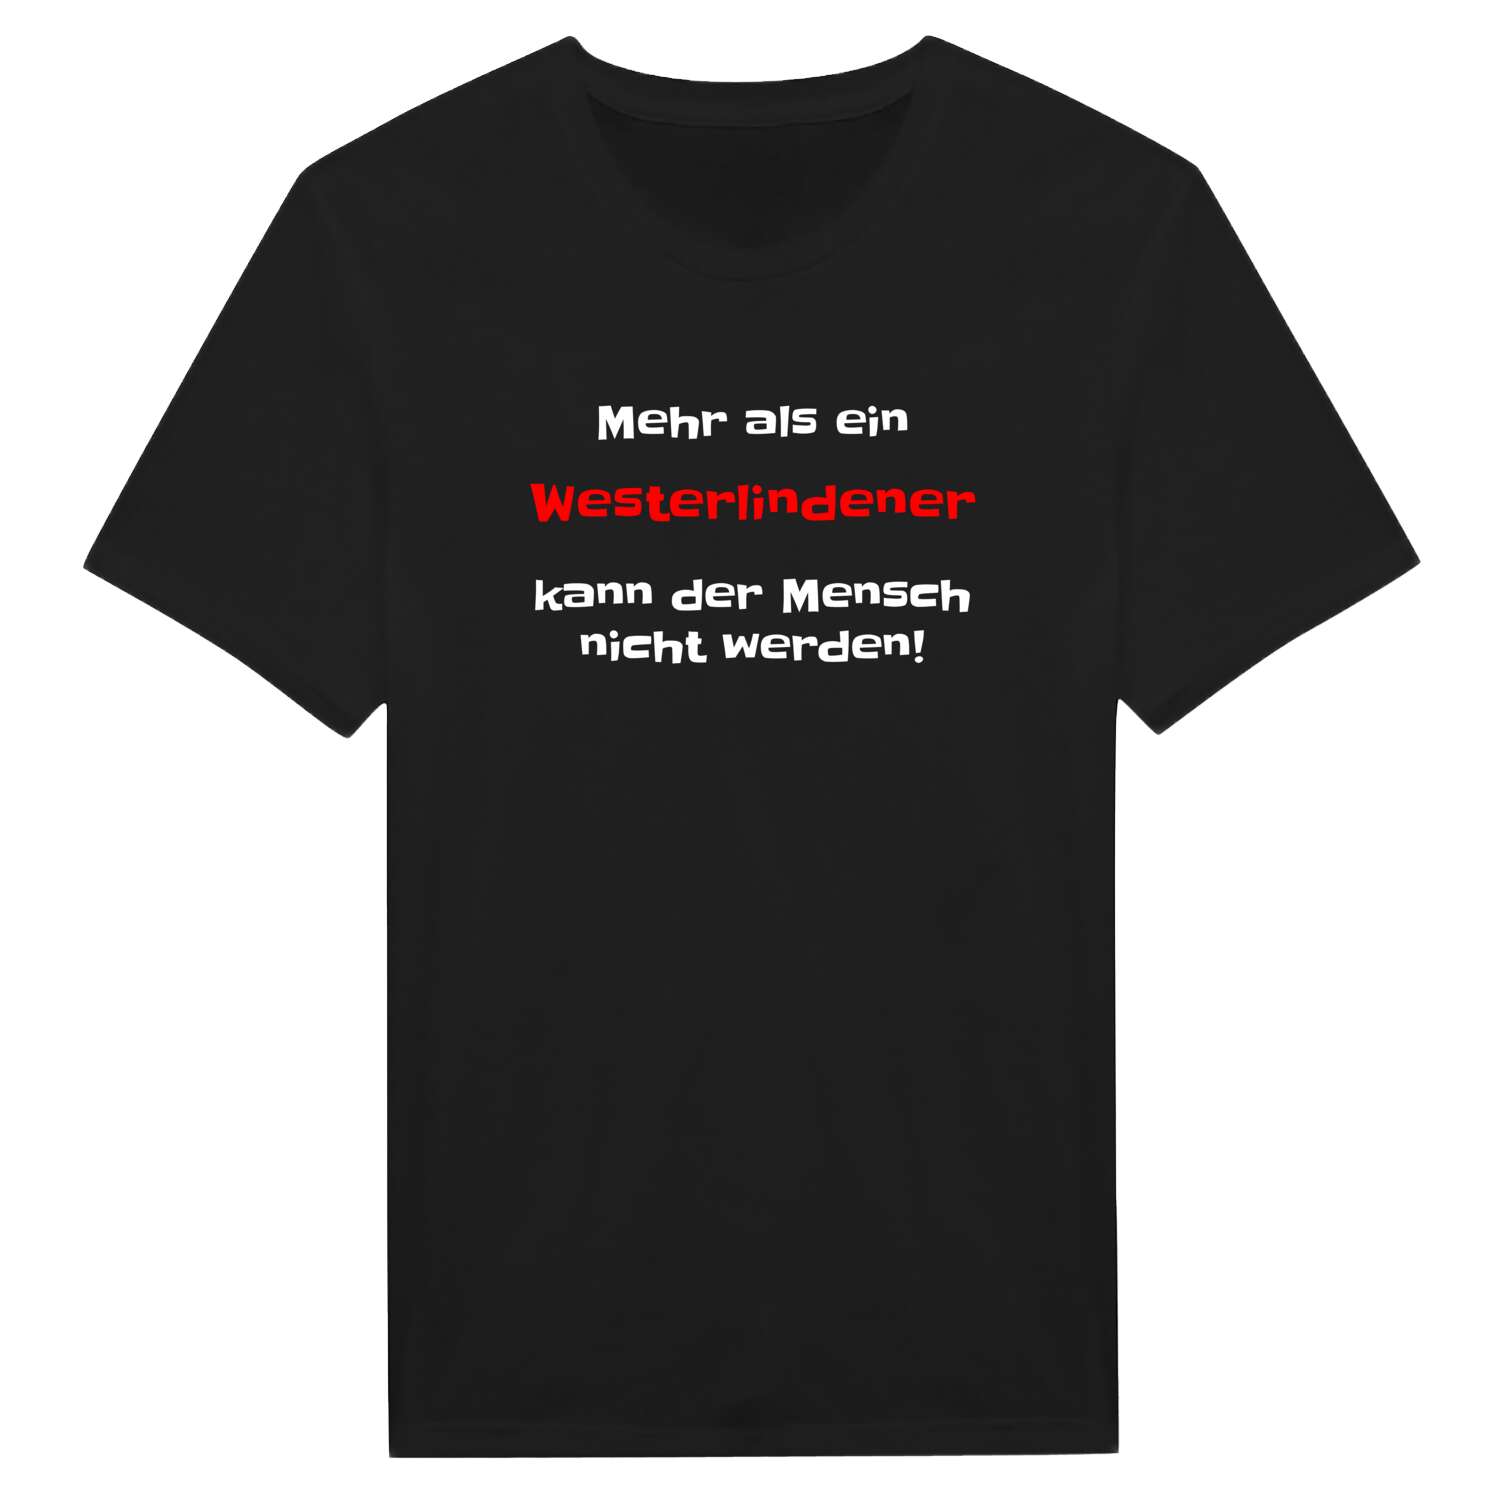 Westerlinde T-Shirt »Mehr als ein«